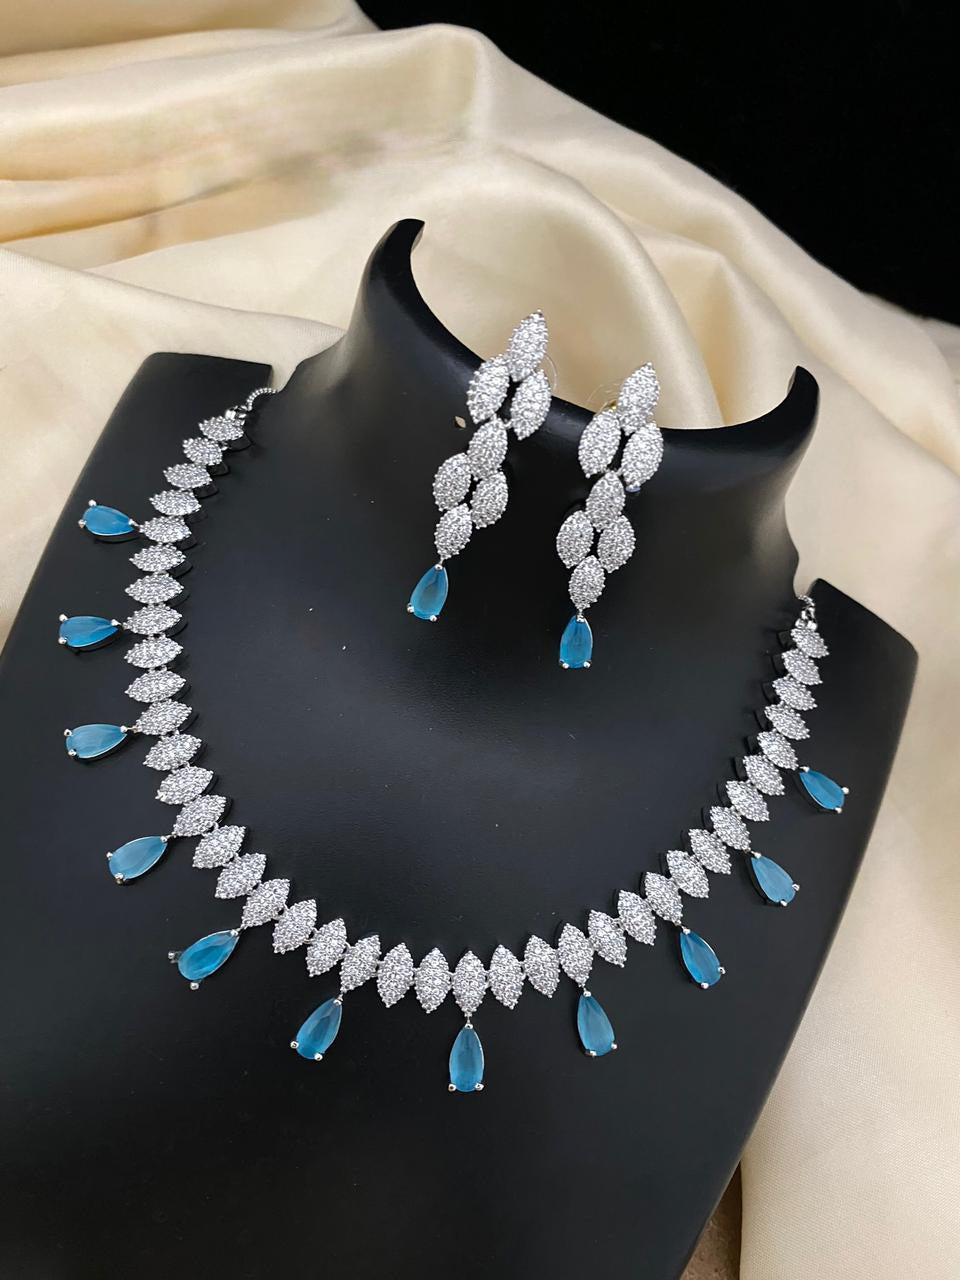 Gold Plated American Diamond Emerald Necklace Set |Indian Designs CZ Ad Bridal Choker Set | Gold Plated Pakistani Bridal Choker Jewelry Sets